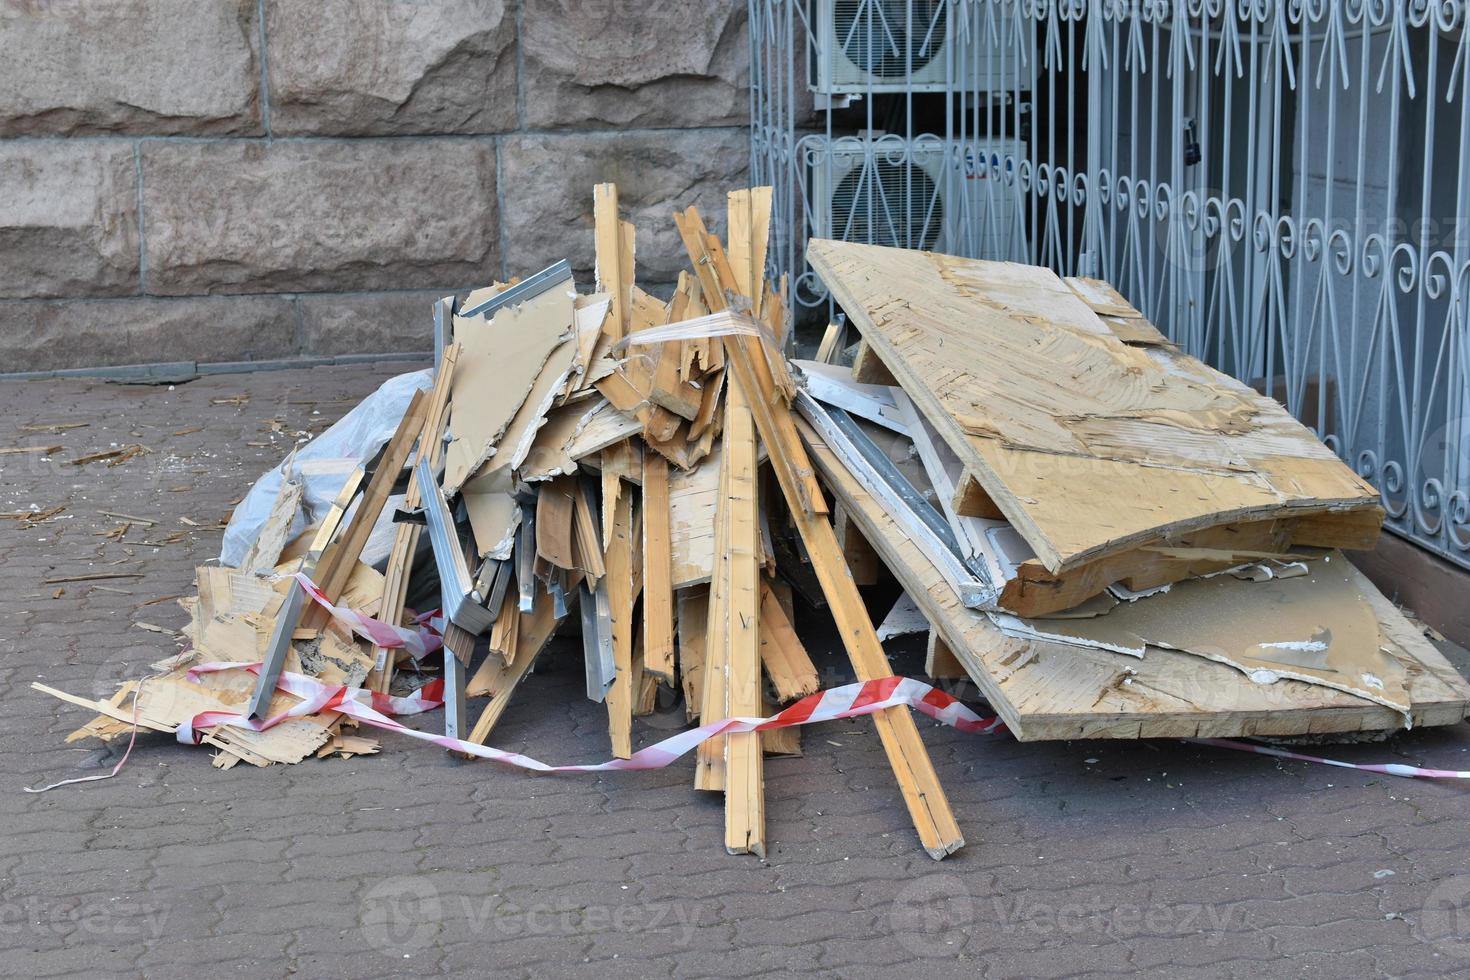 bouwafval houten planken en karton op straat. na aanleg of reparatie. foto